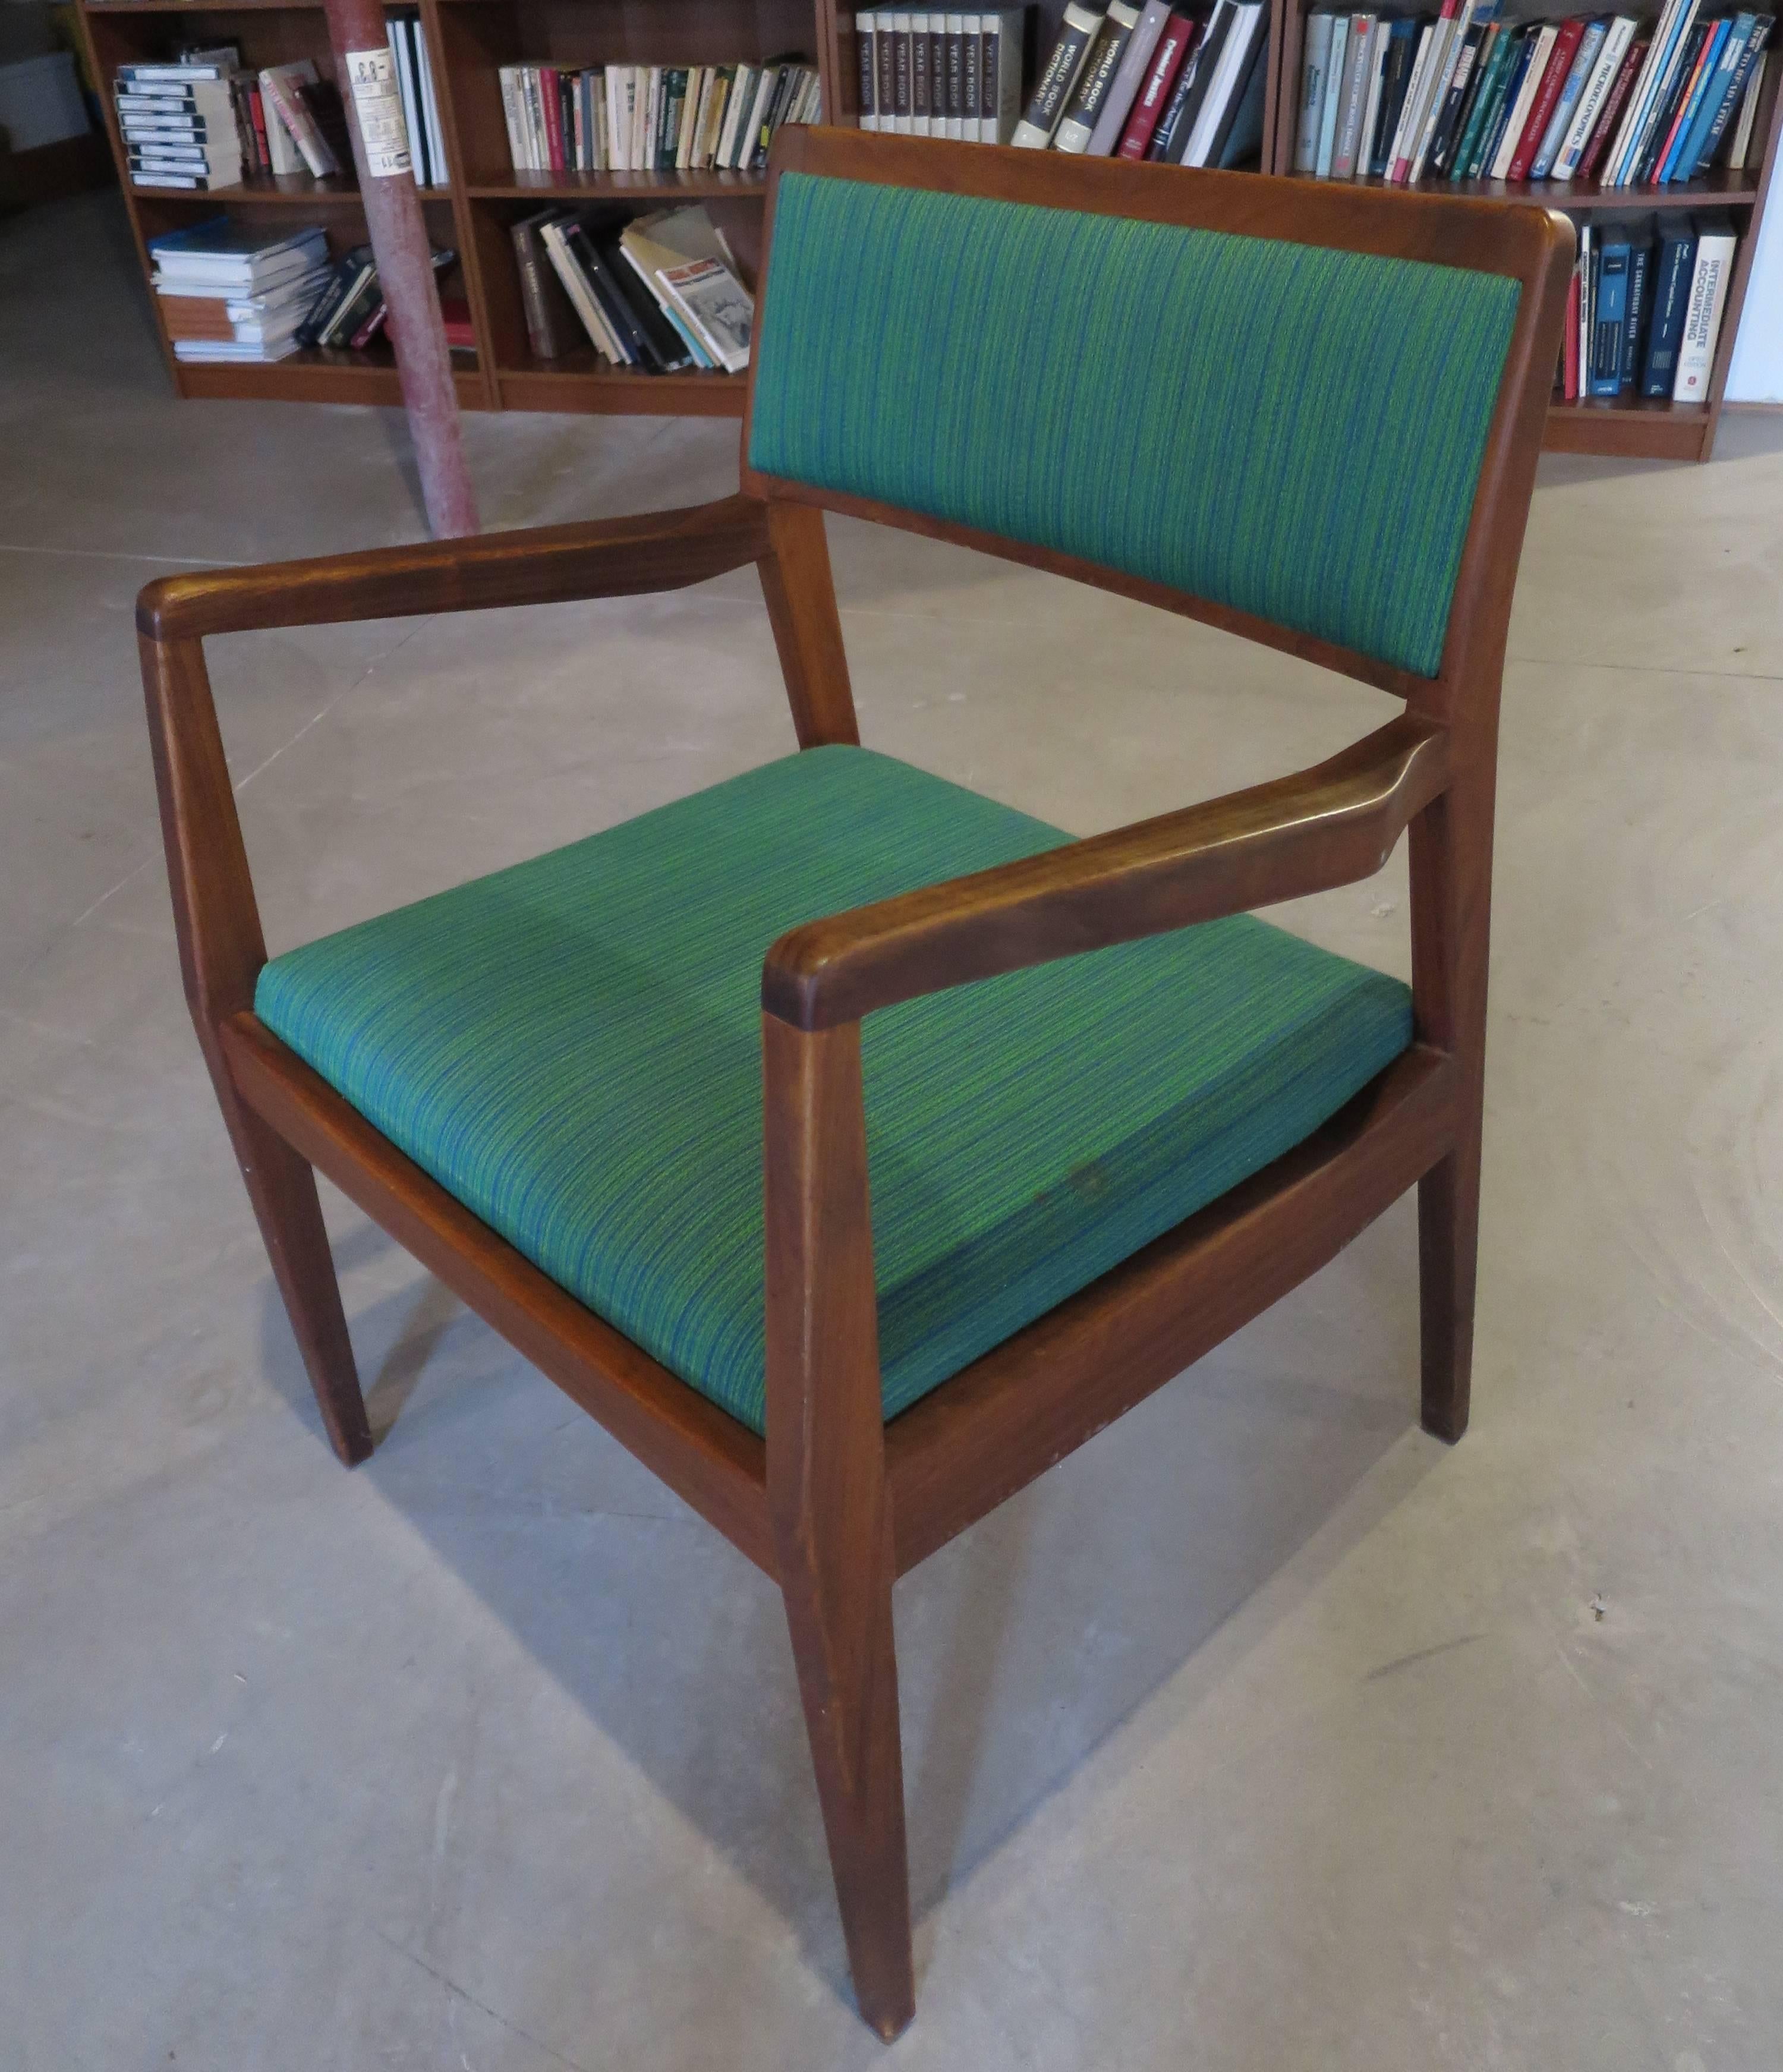 Wunderschönes Sesselpaar von Jens Risom, Modell C140 in Nussbaumgestell und original grüner Polsterung in hervorragendem Zustand.

Der Preis gilt nur für das Paar.

 